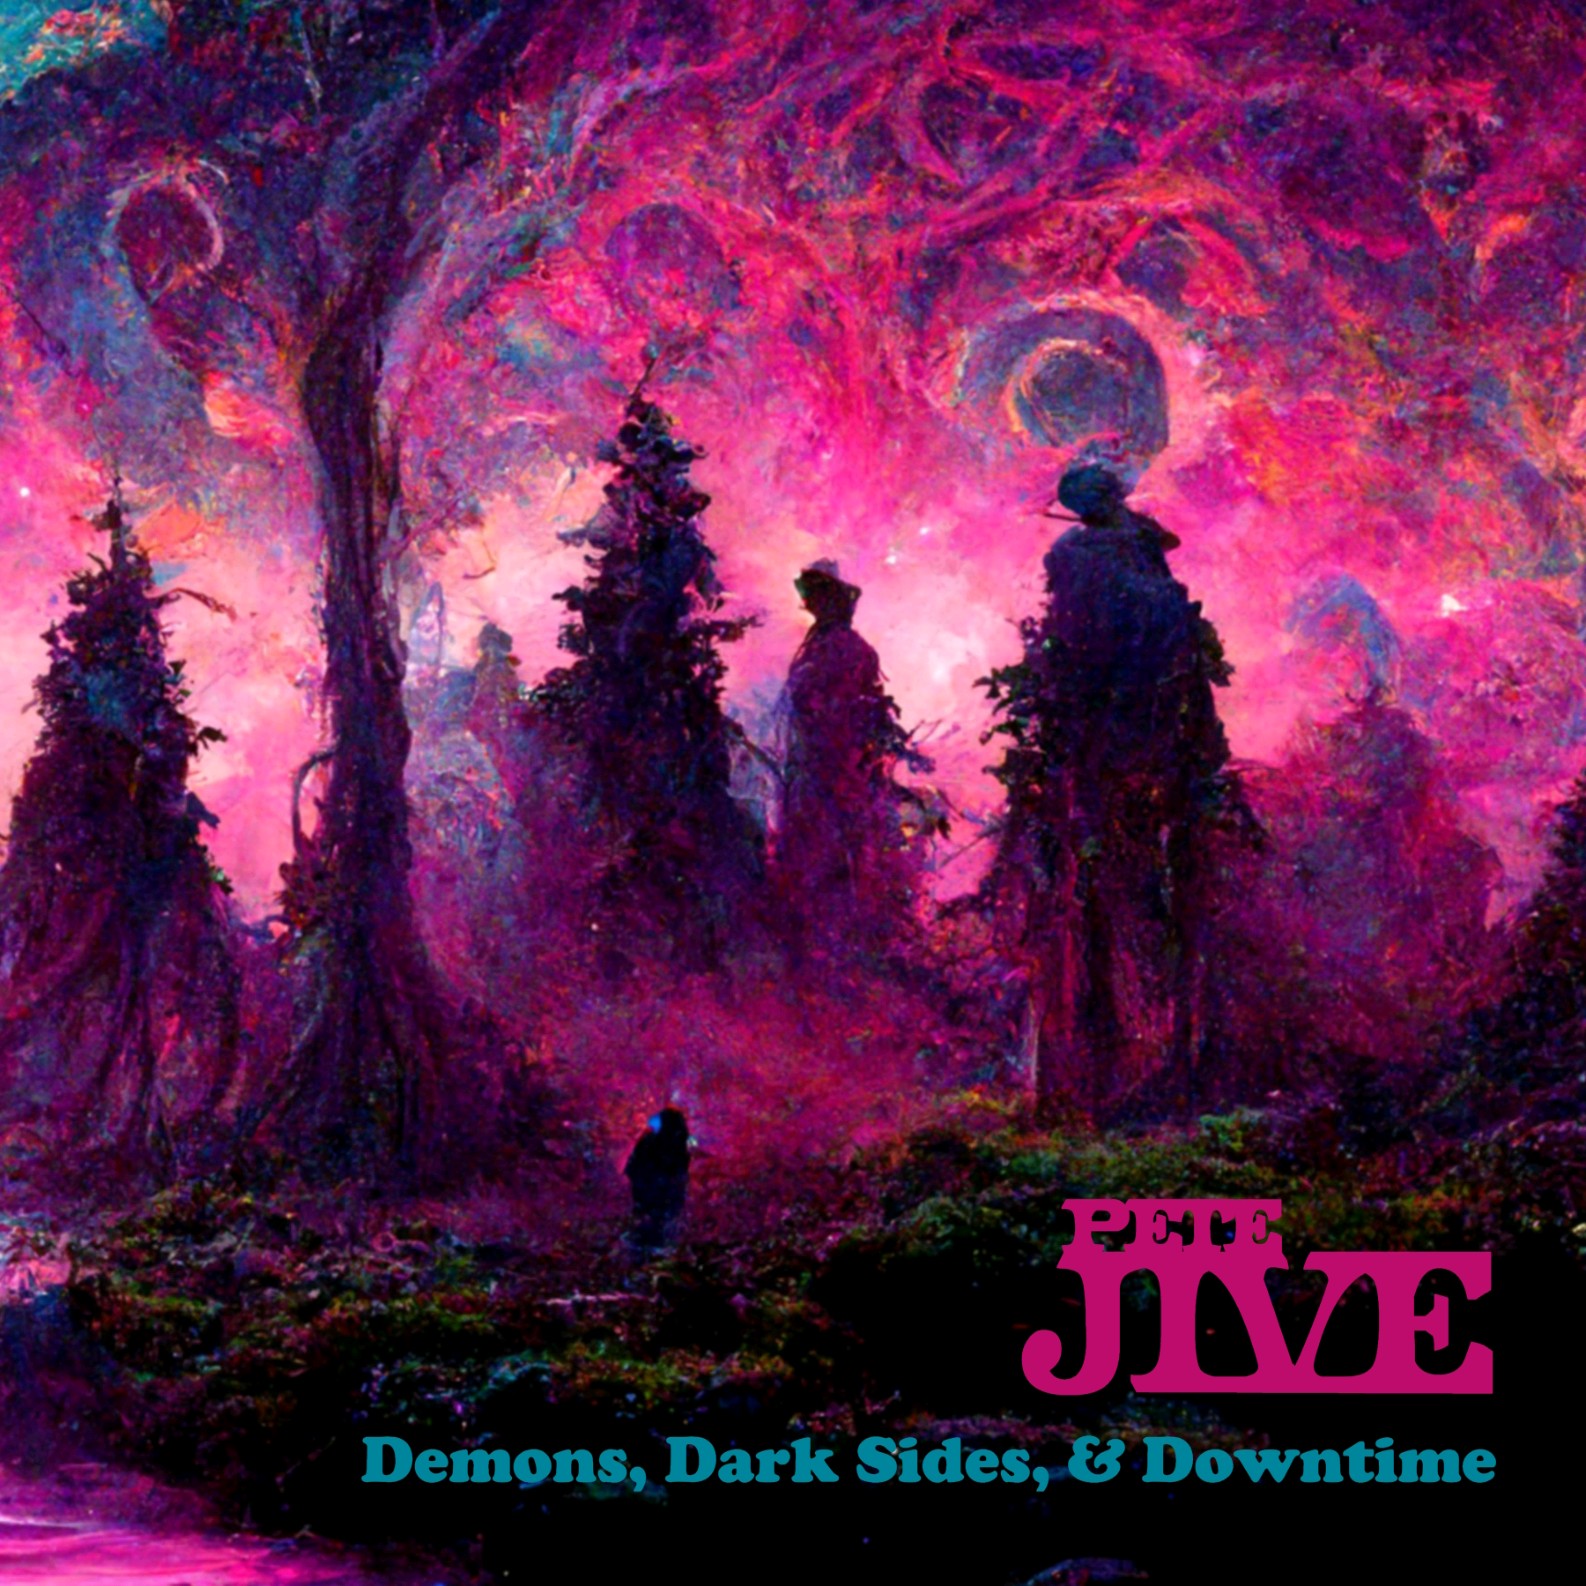 Demons, Dark Sides & Downtime CD & Vinyl